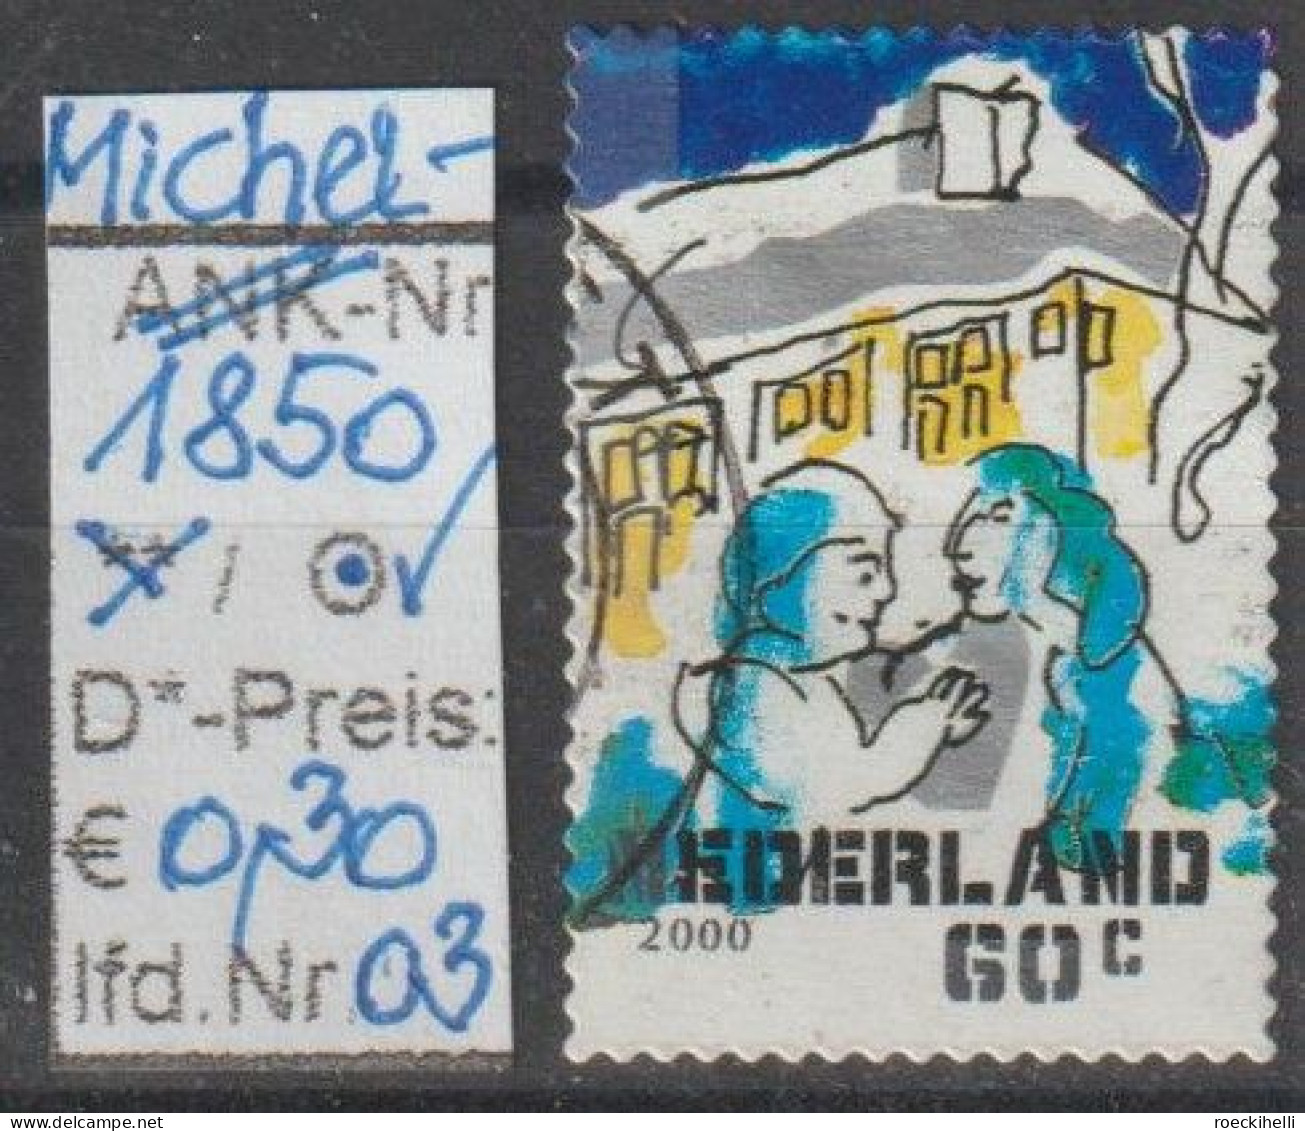 2000 - NIEDERLANDE - FM/DM "Dez.marken-Paar Vor Haus" 60 C Mehrf. - S. Scan  (1850o 01-03 Nl) - Usati